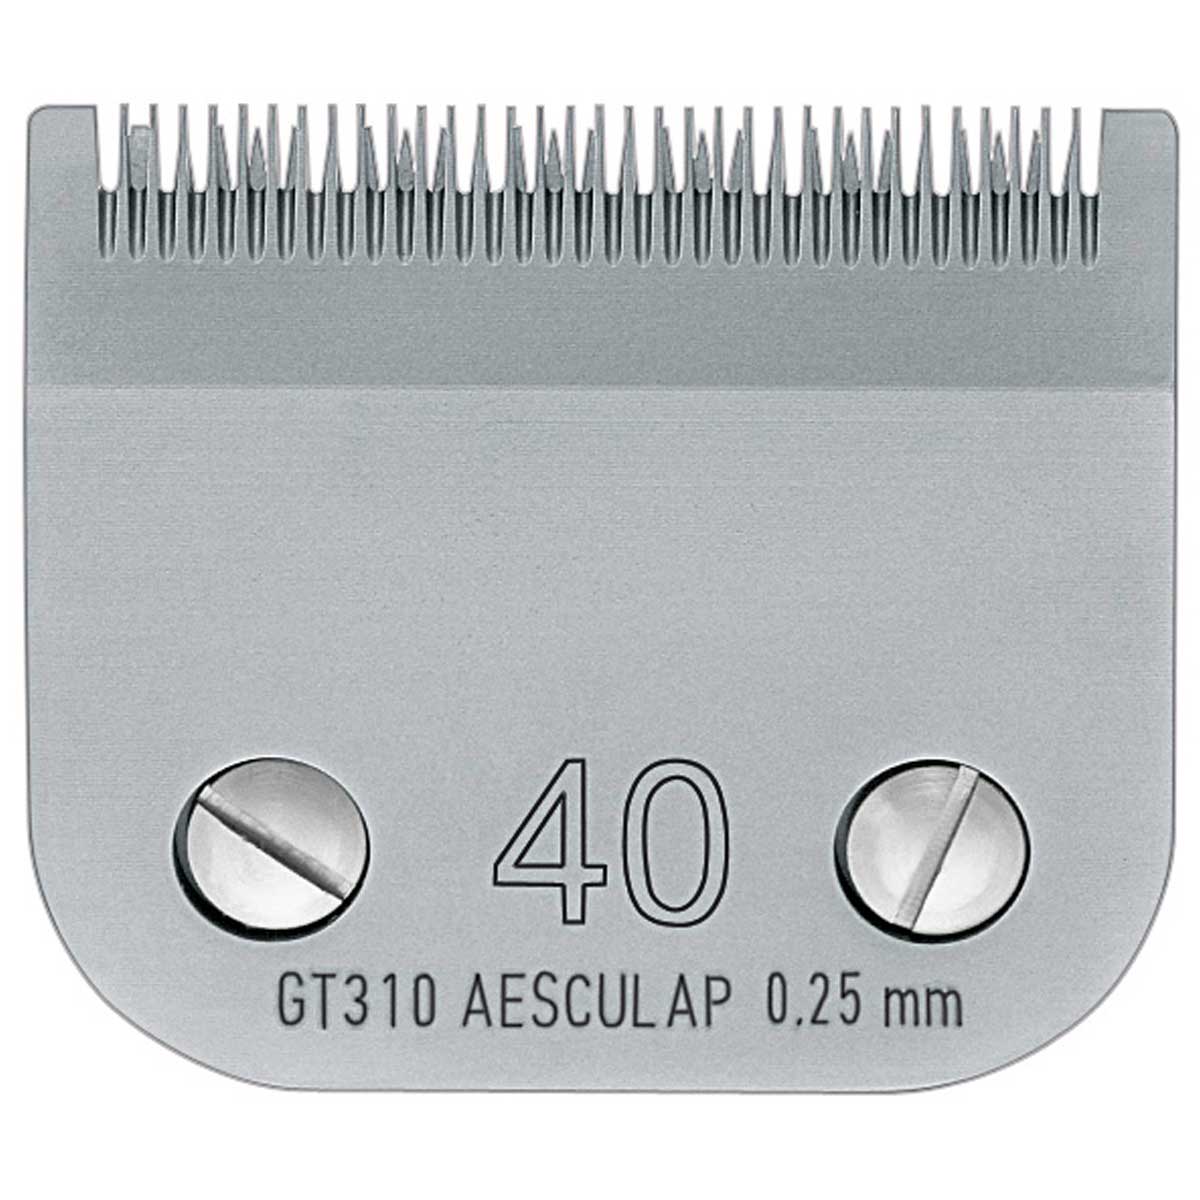 Aesculap Testina per tosatrici SnapOn compatibile 0,25 mm, GT310 #40 (Denti fini)